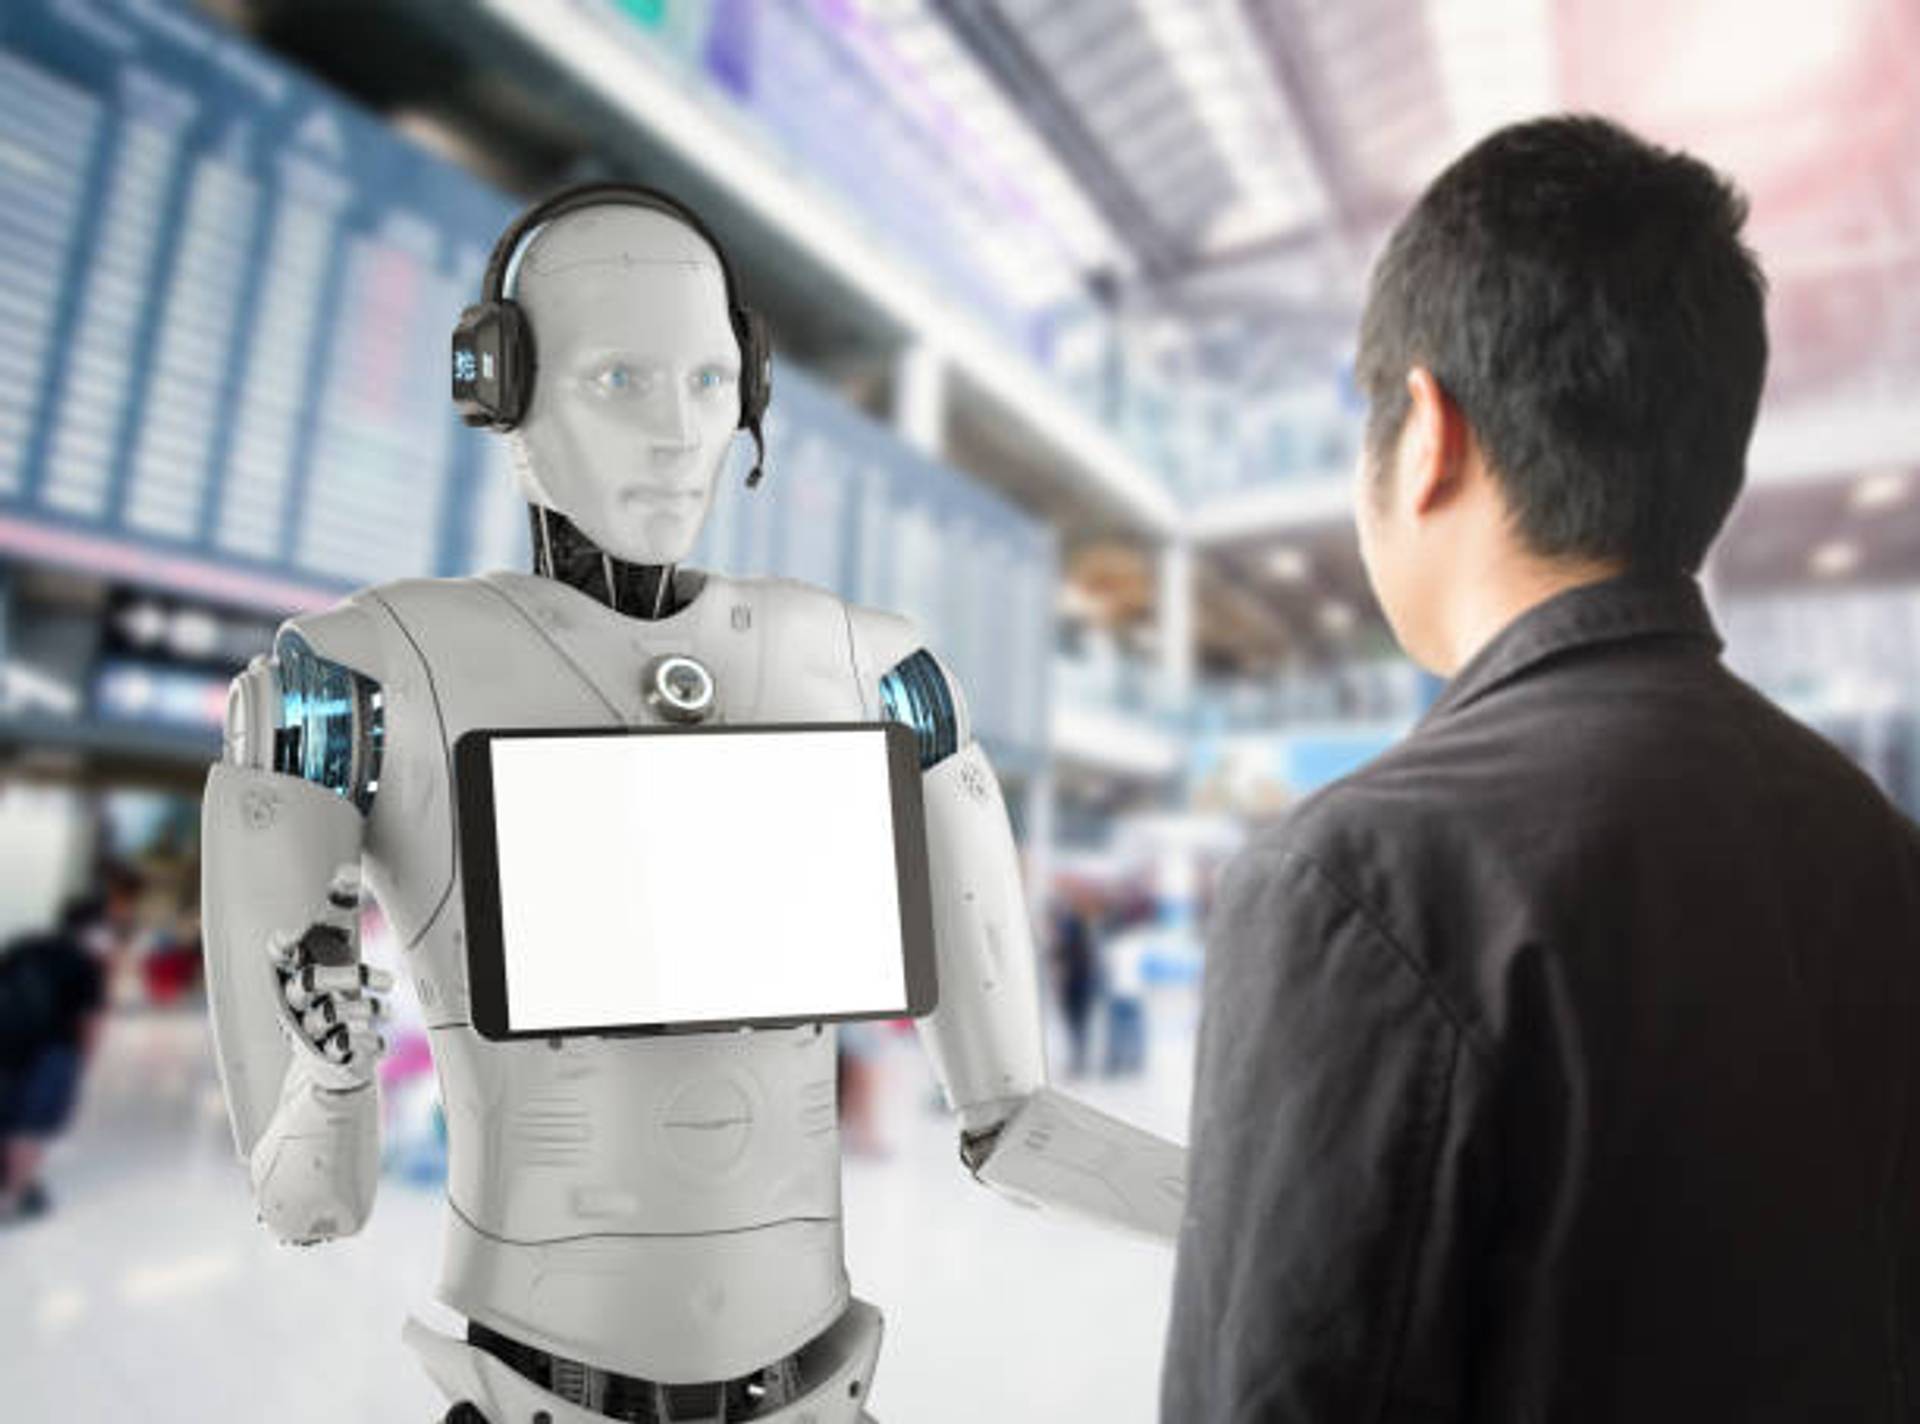 Baidu uses AI to create a digital human marketplace